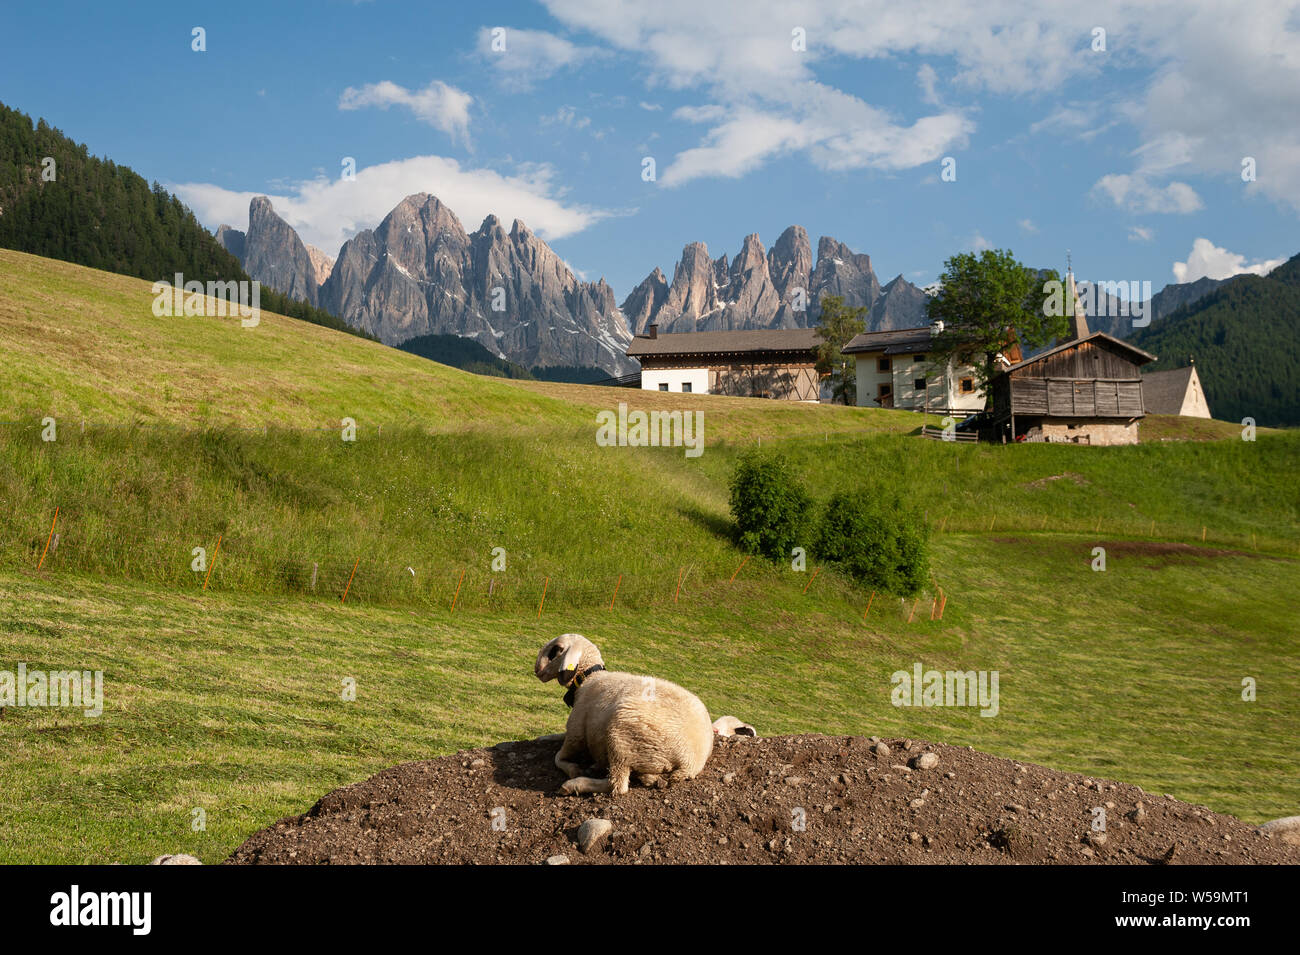 20.06.2019, Maddalena, Villnoess, Trentino, Alto Adige, Italia, Europa - pecore nel Parco Naturale della Valle Villnoess. Foto Stock